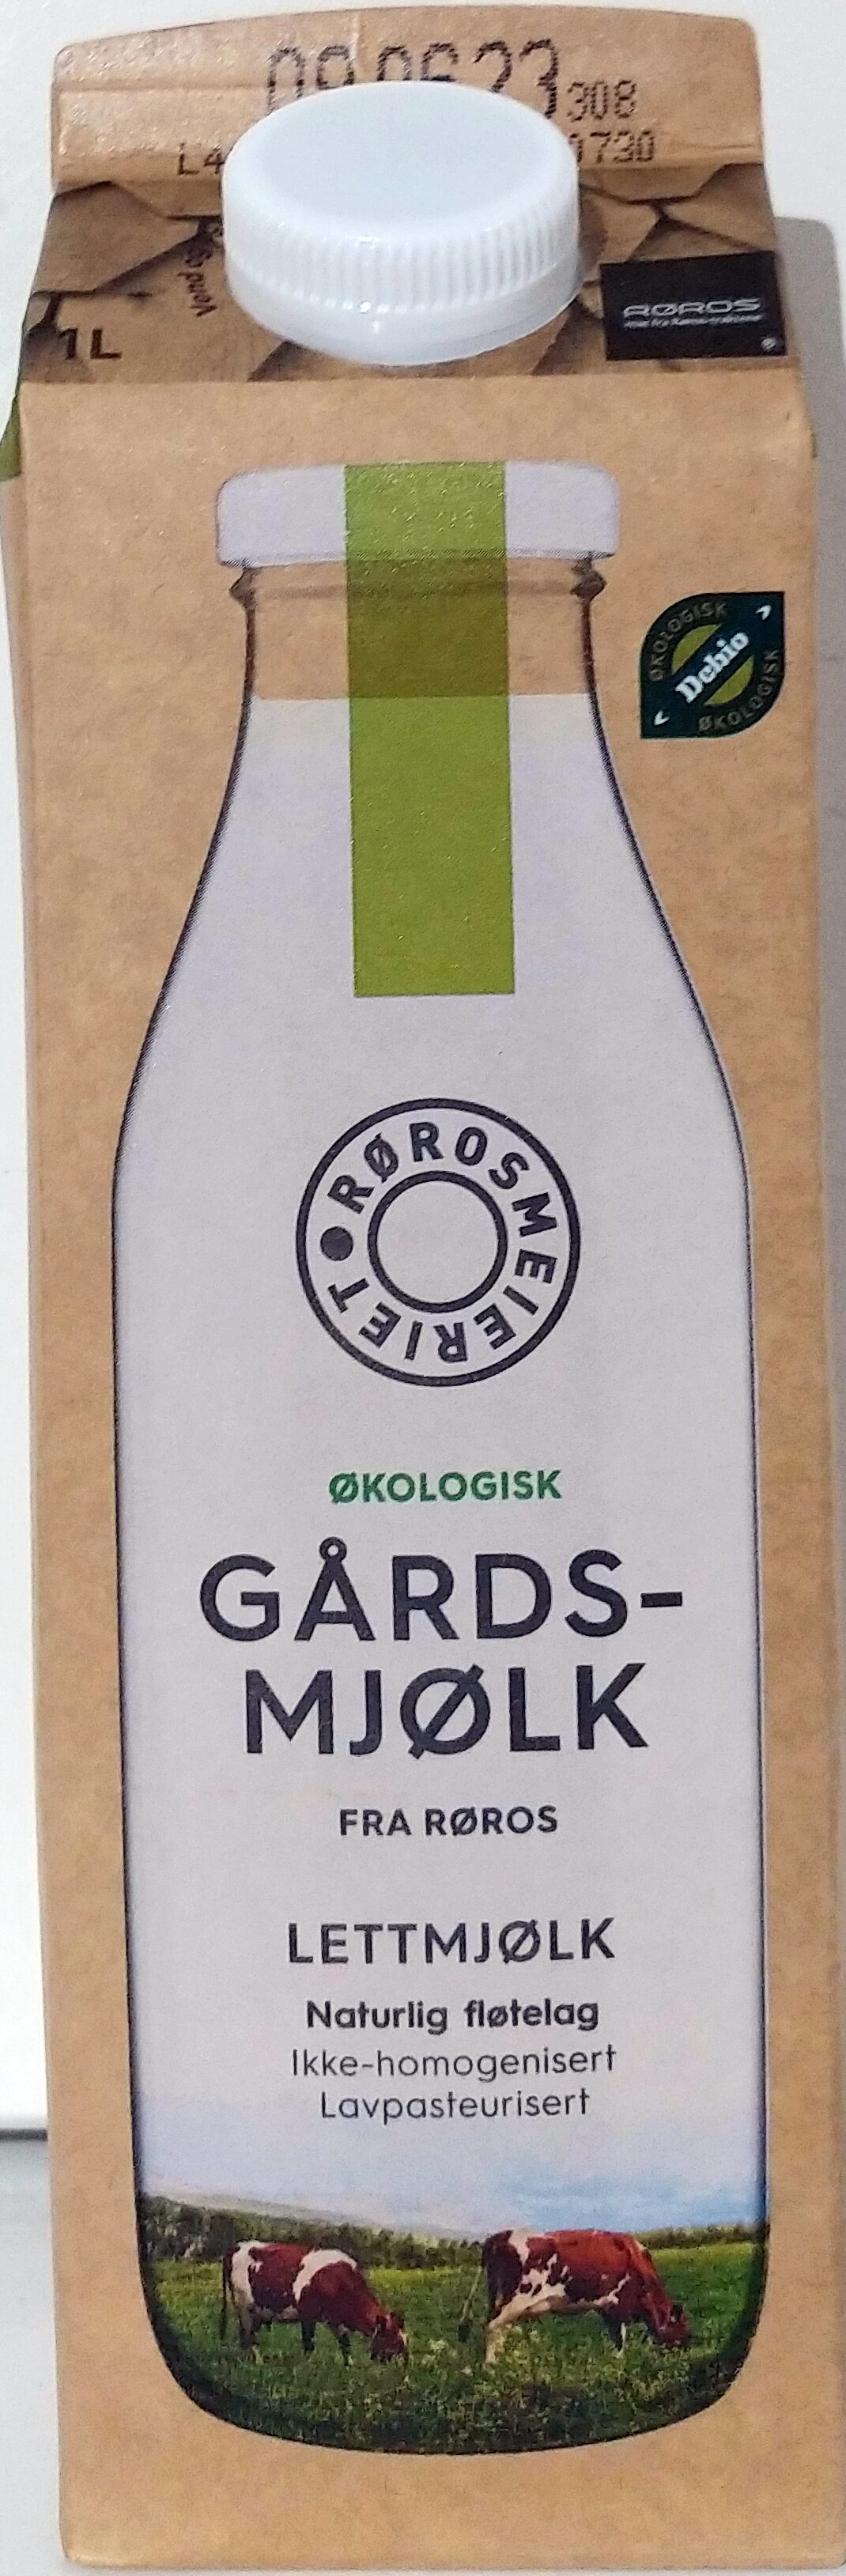 Økologisk Gårdsmjølk fra Rødros - Lettmjølk - Produkt